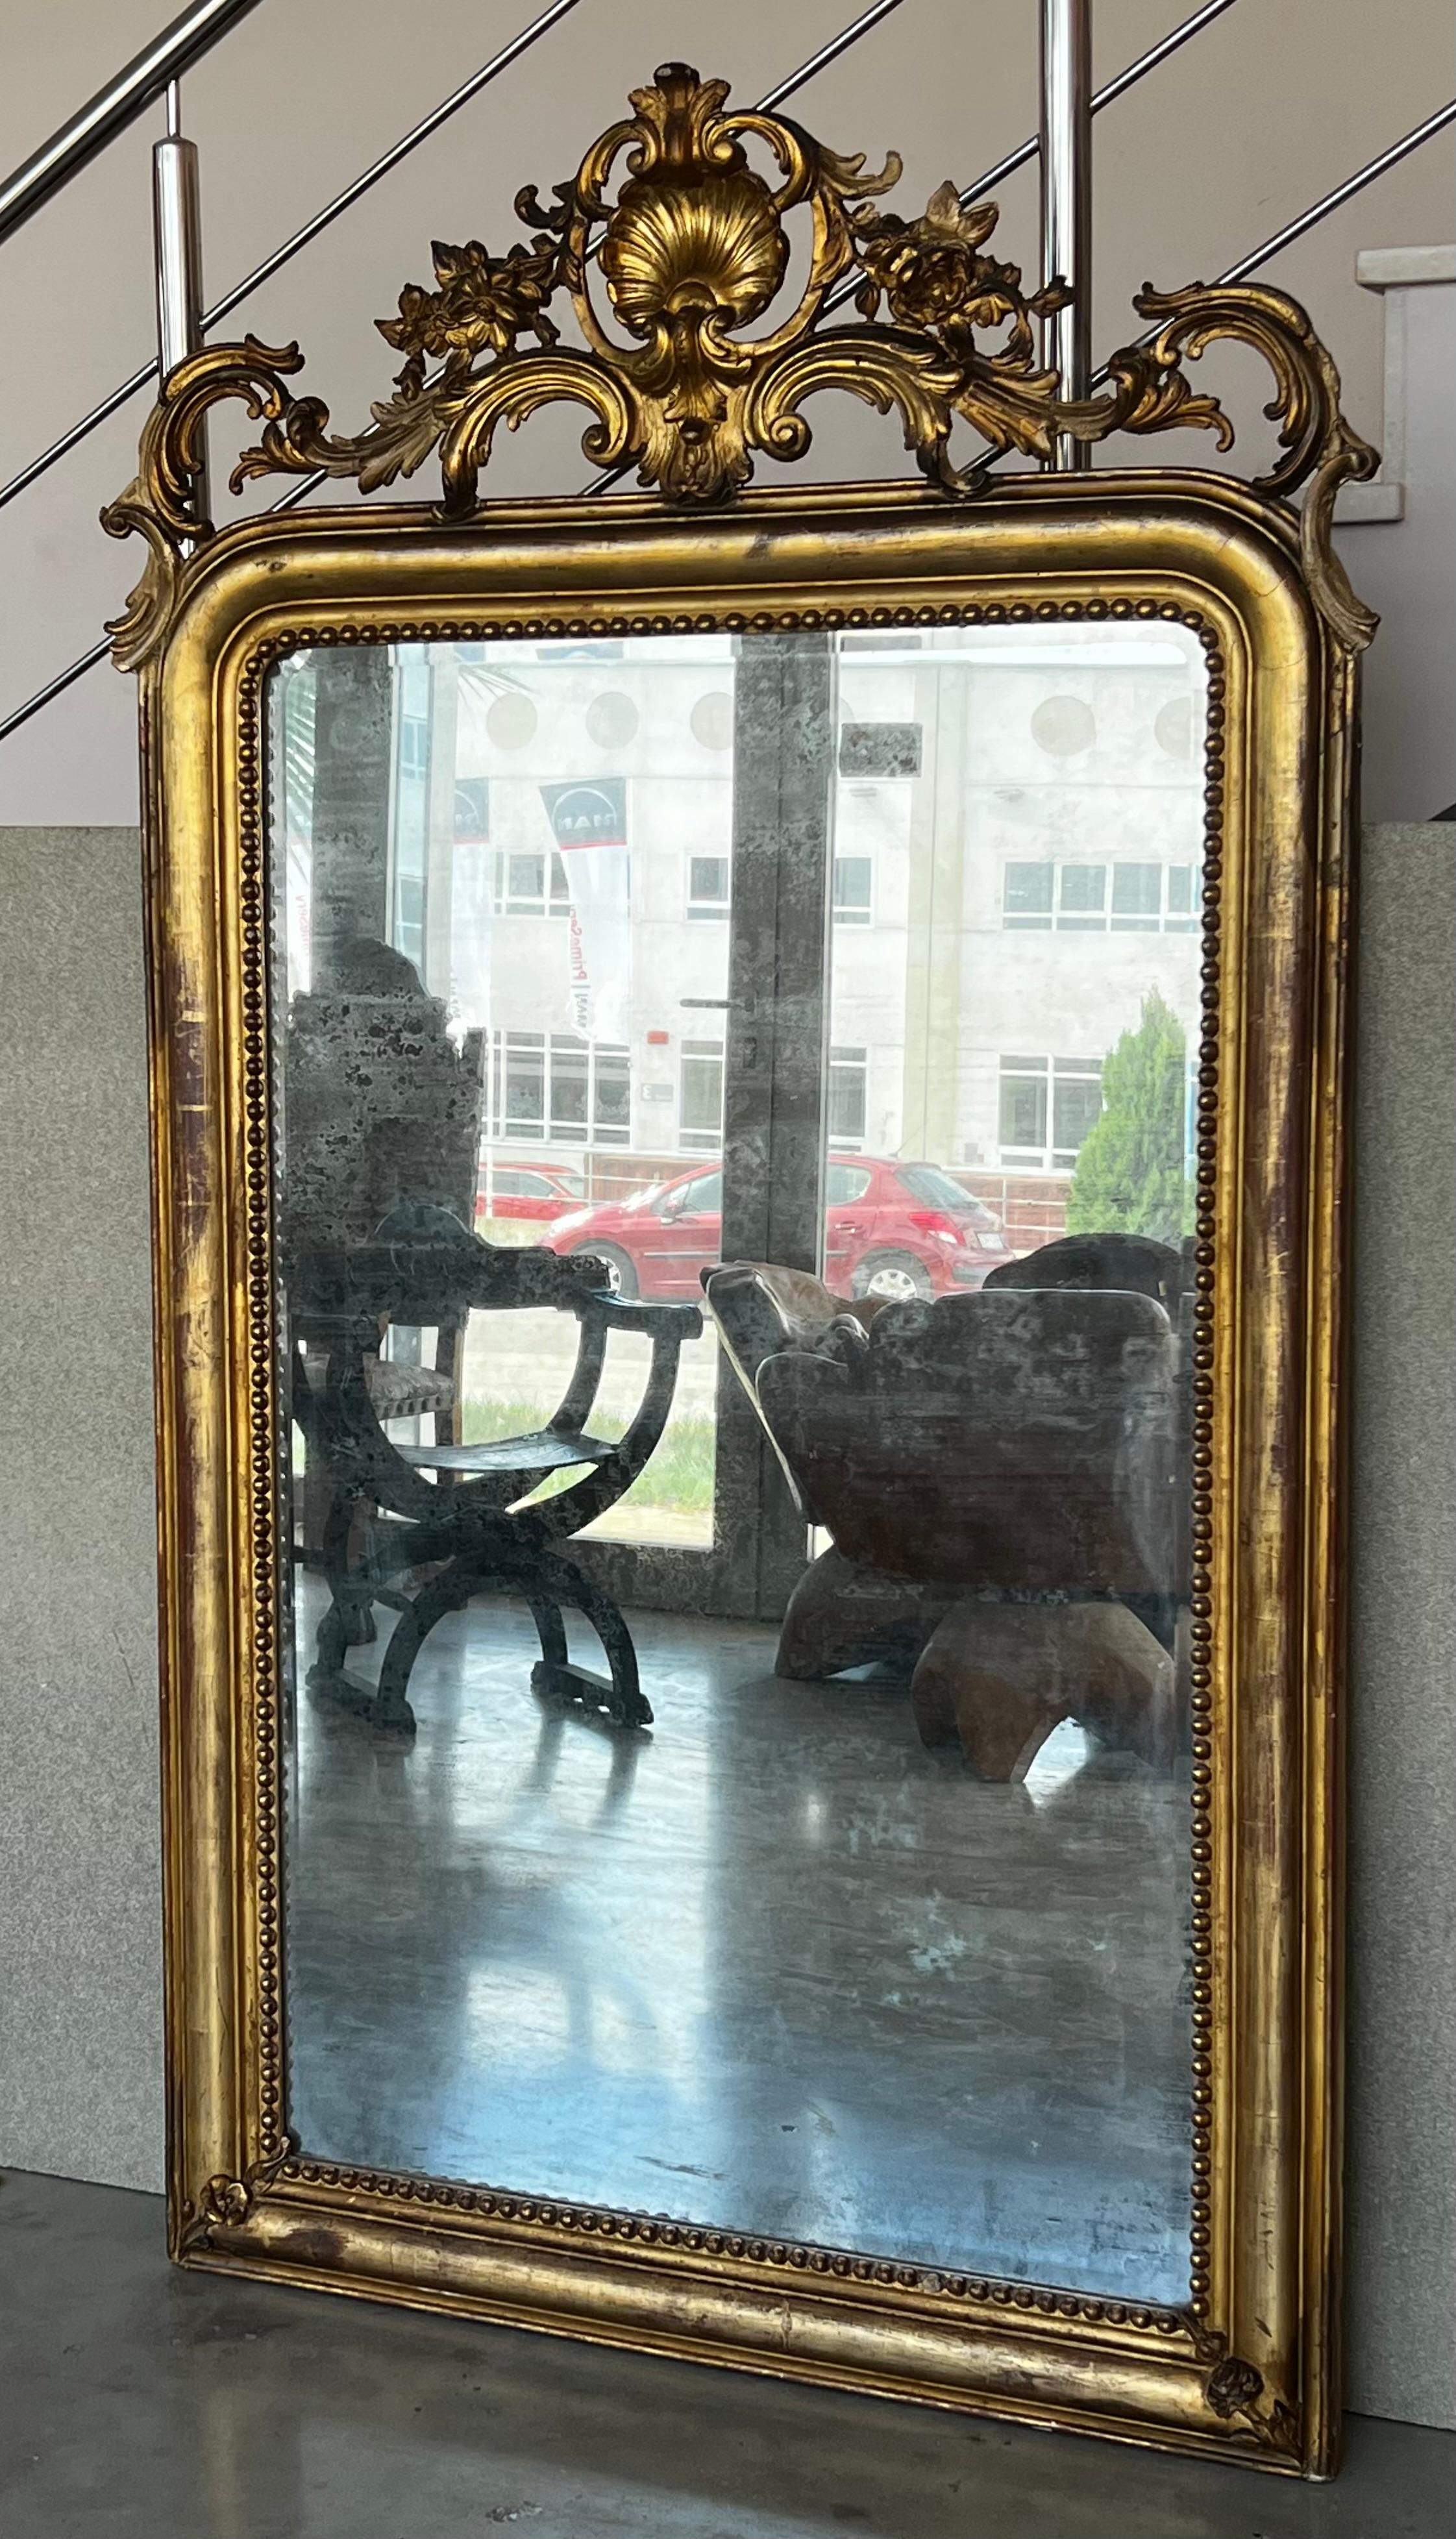 miroir rectangulaire d'époque Empire français du 19e siècle en bois doré sculpté.
Un exceptionnel miroir français assorti, sculpté et doré à la main. Hautement sculpté de fleurs, verre d'origine et dos en bois d'origine, France, 19ème siècle.